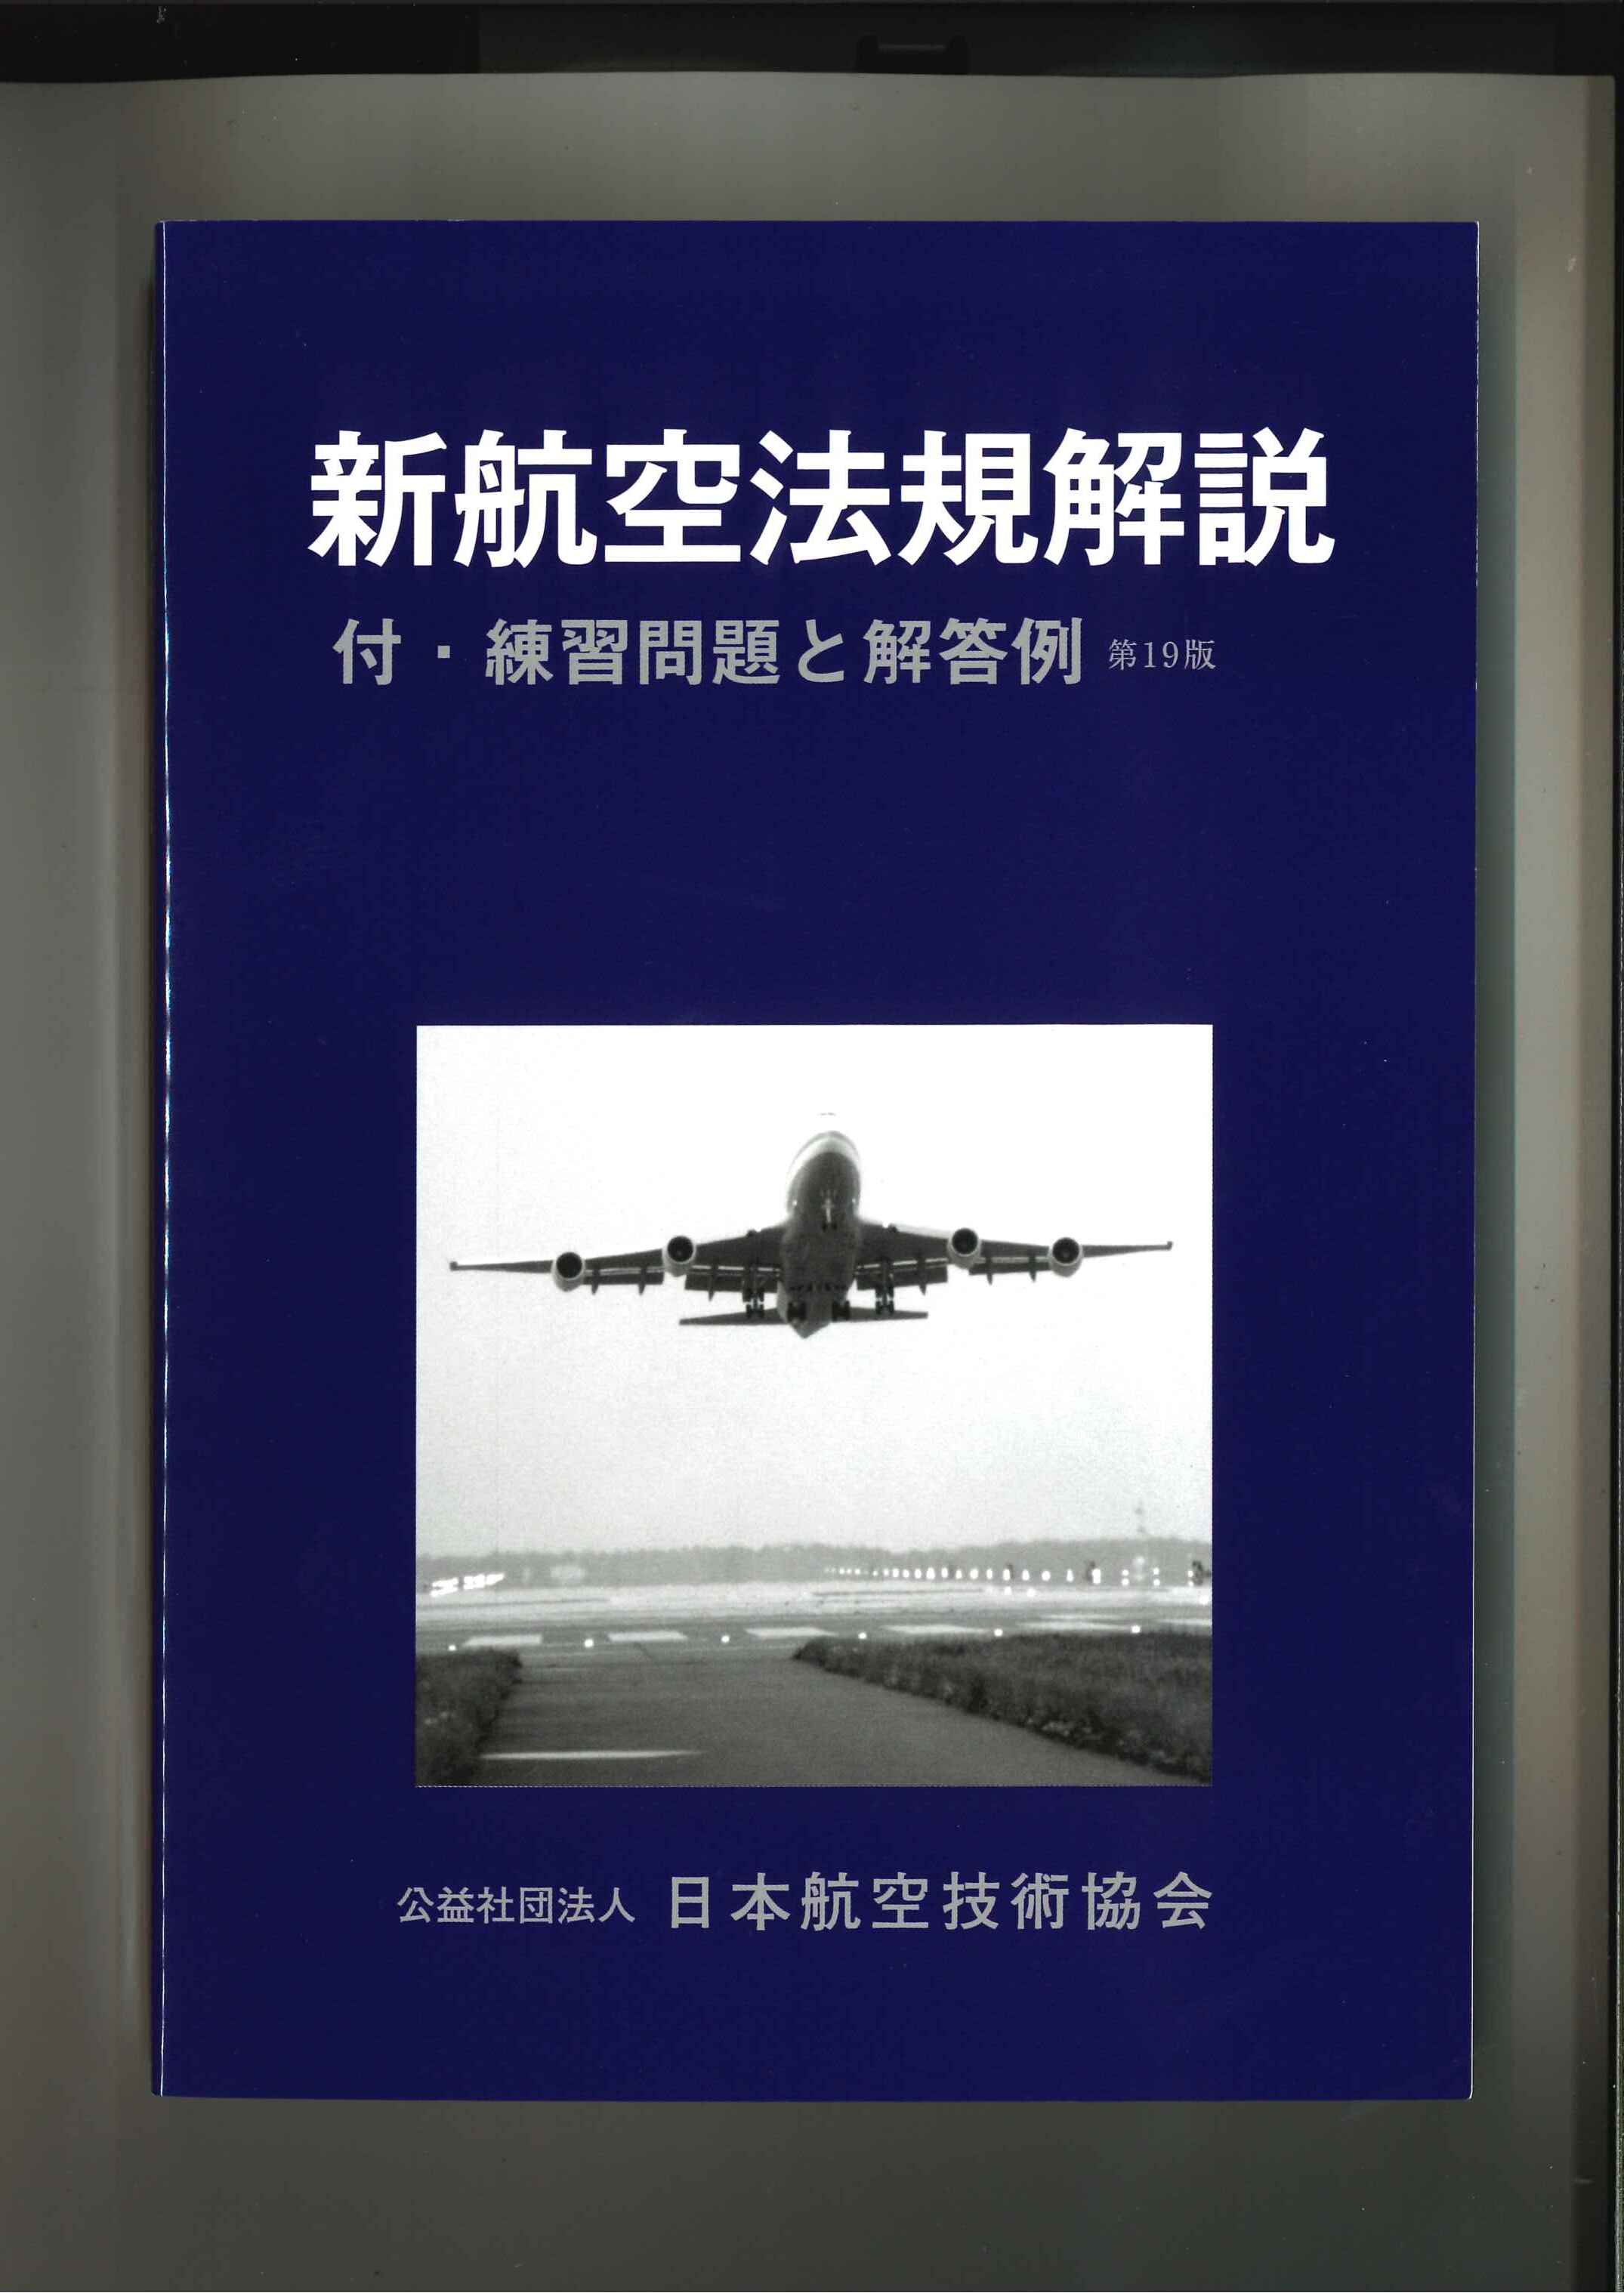 新航空法規解説（第19版）2023年3月31日発行　日本航空技術協会オンラインショップ｜航空（特に教育・研究）に関する図書の通販